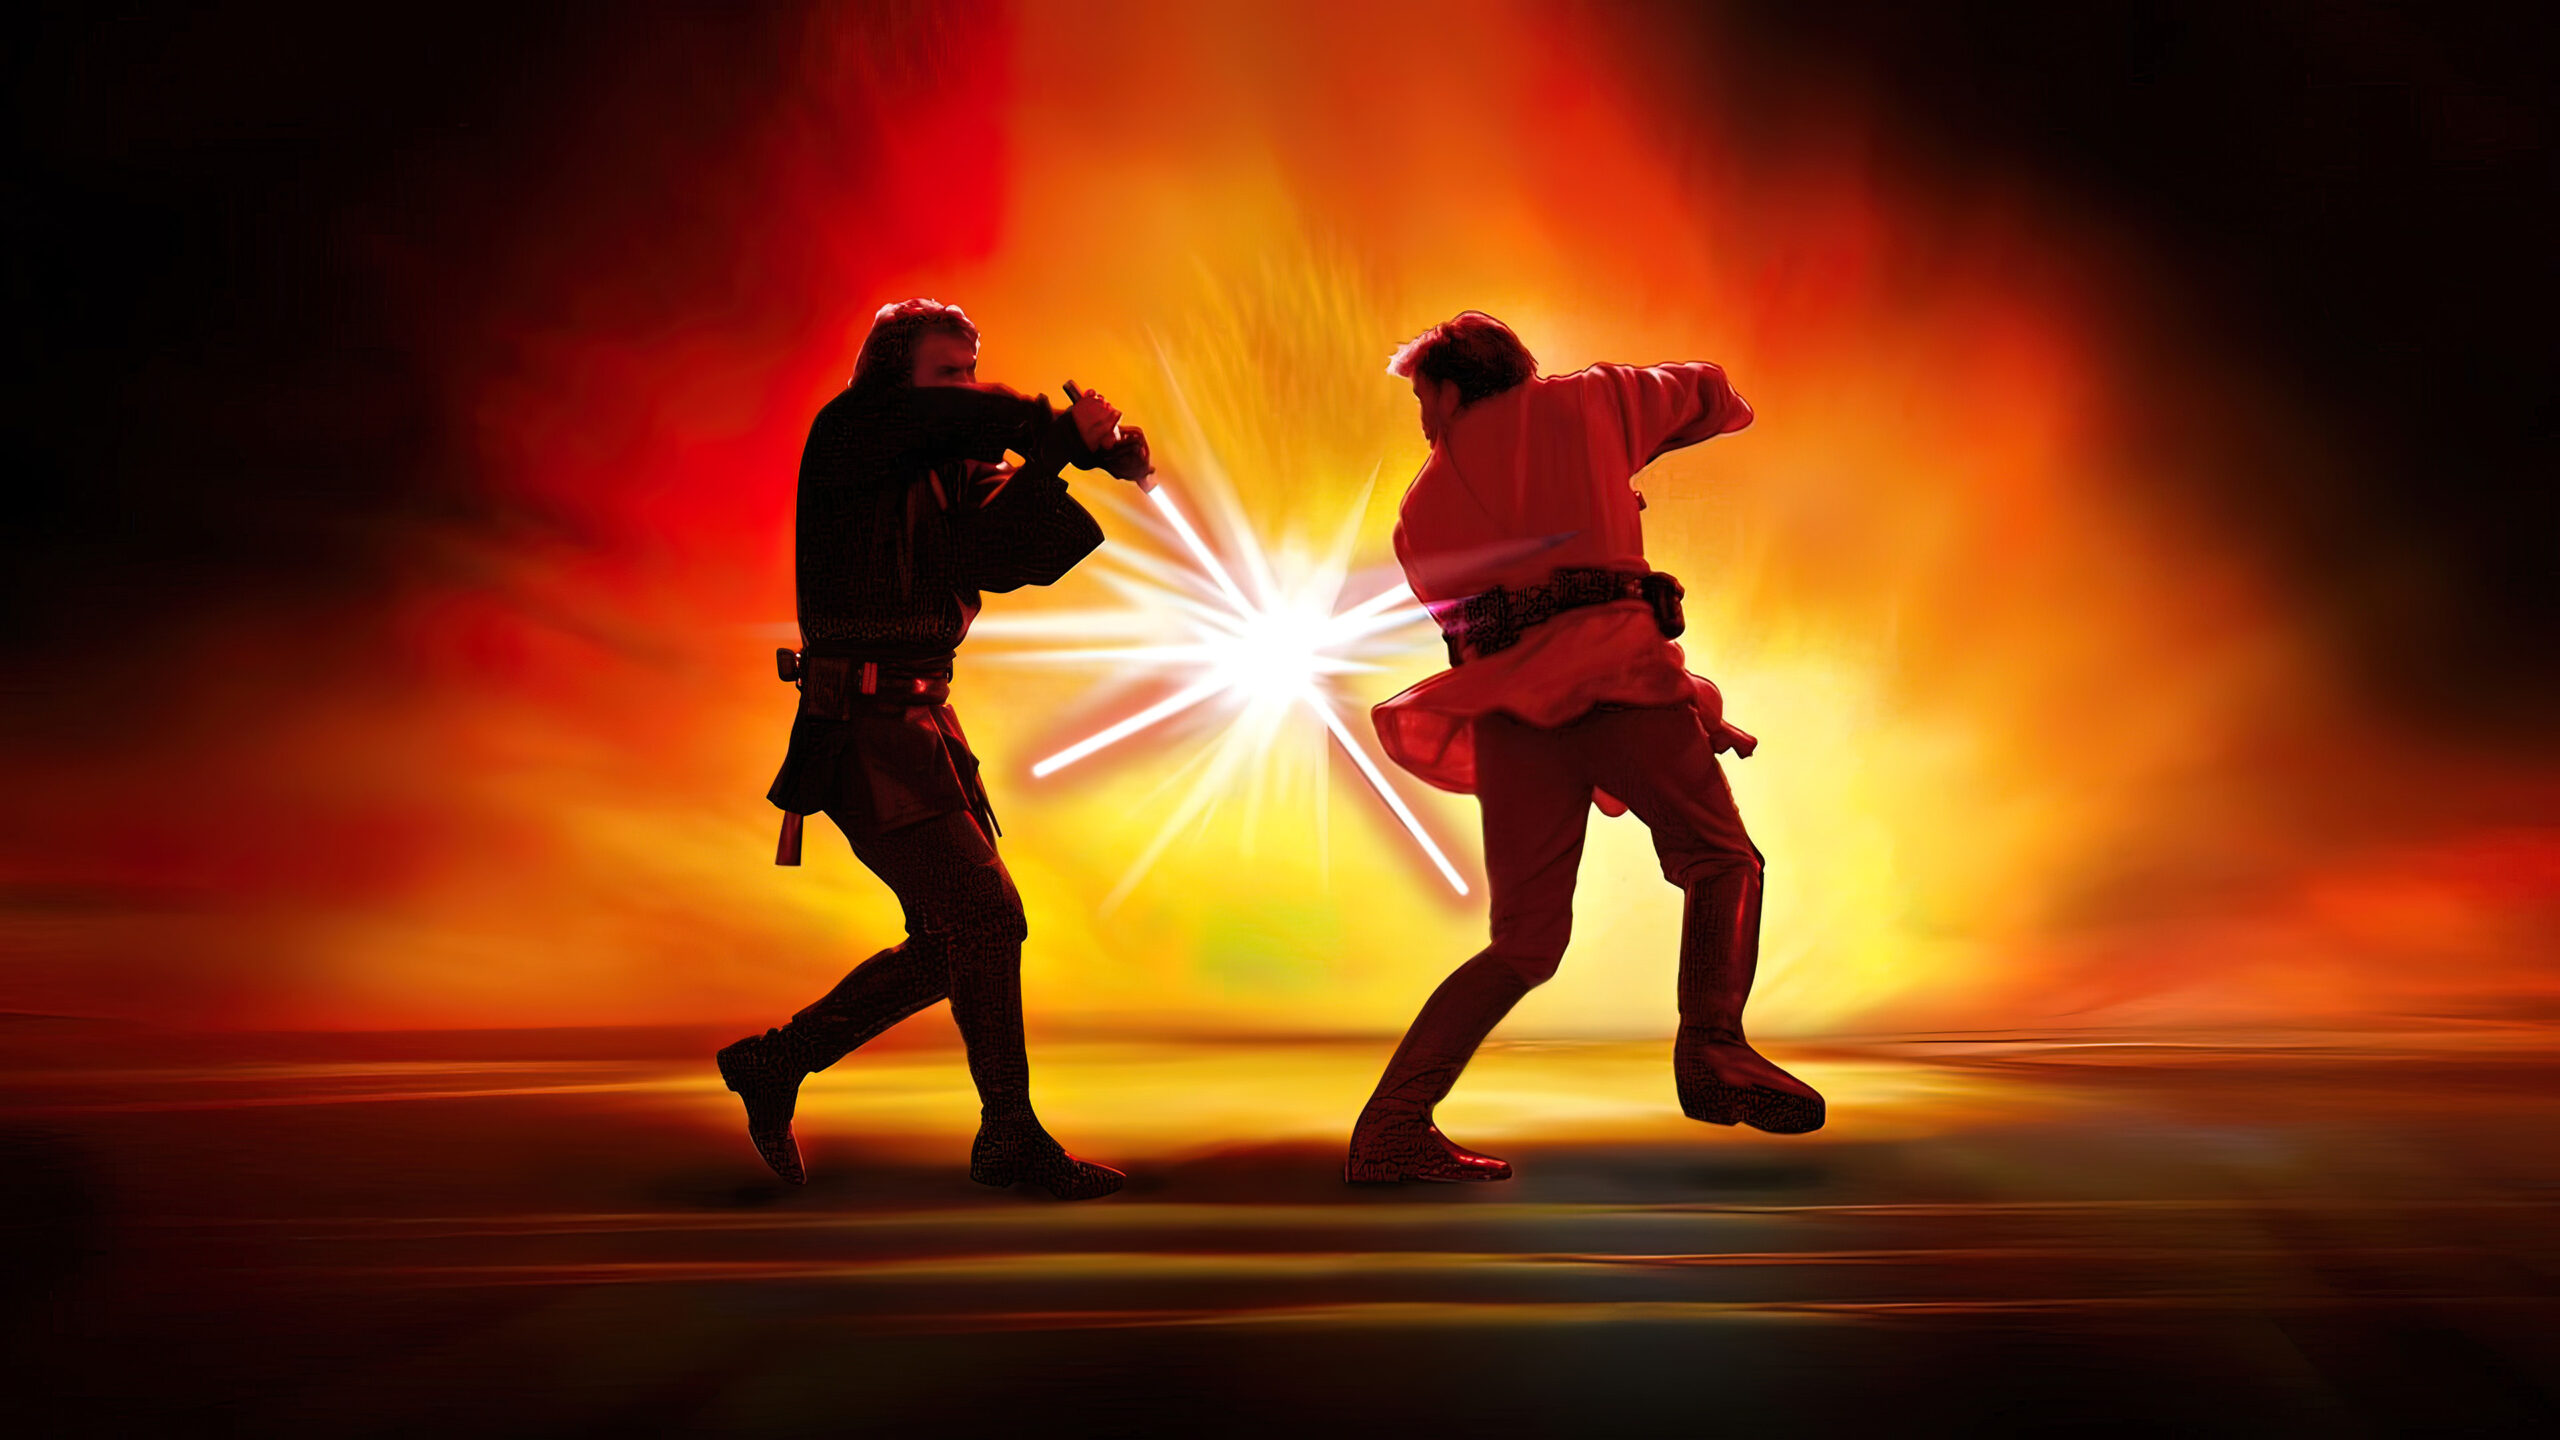 Anakin vs Obi Wan showdown Episode III